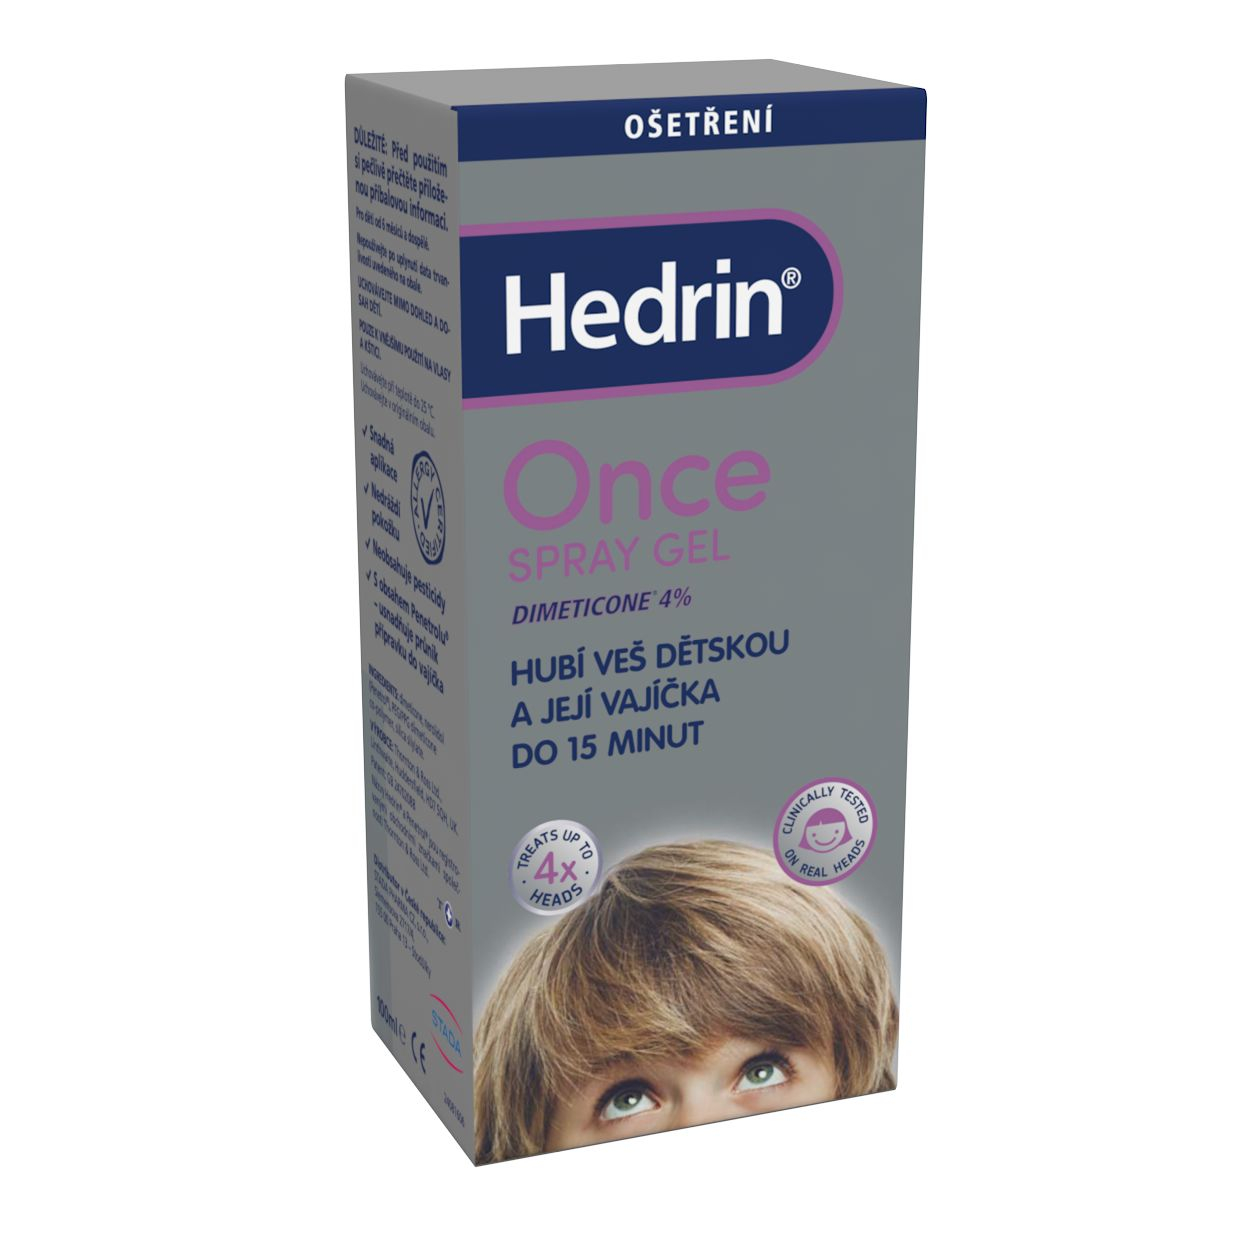 Hedrin ONCE Spray Gel 100 ml Hedrin